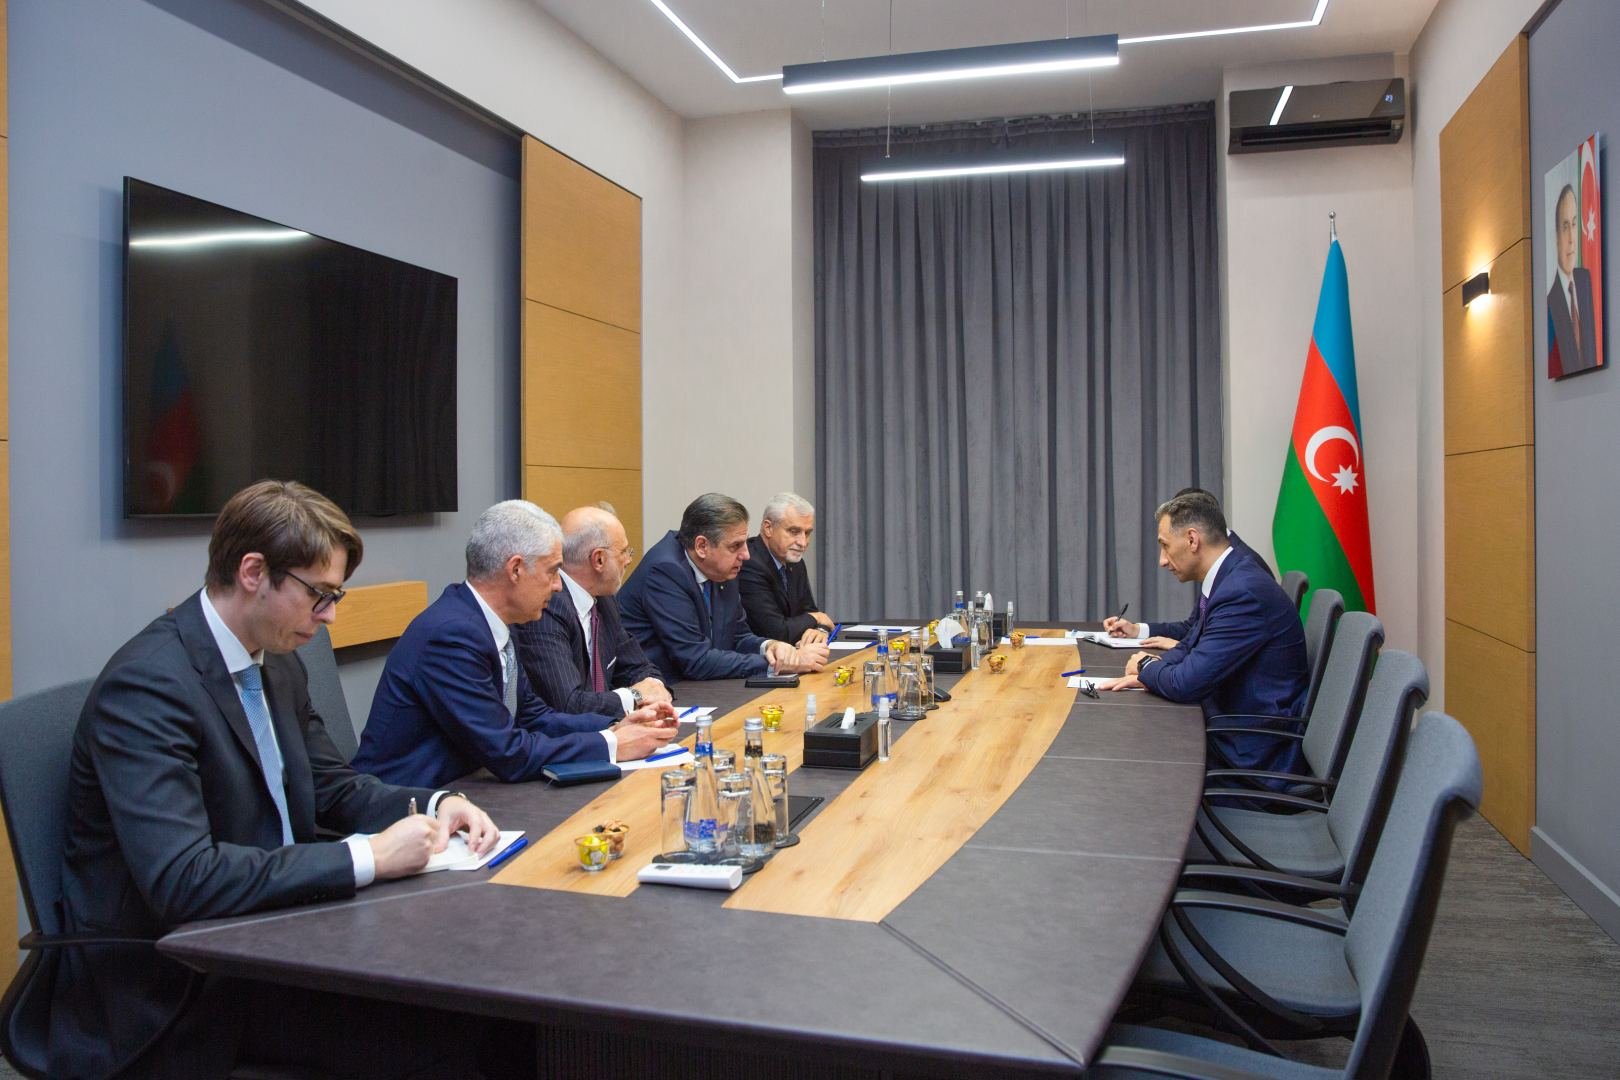 Azerbaijan, Italian Leonardo company mull ICT cooperation prospects